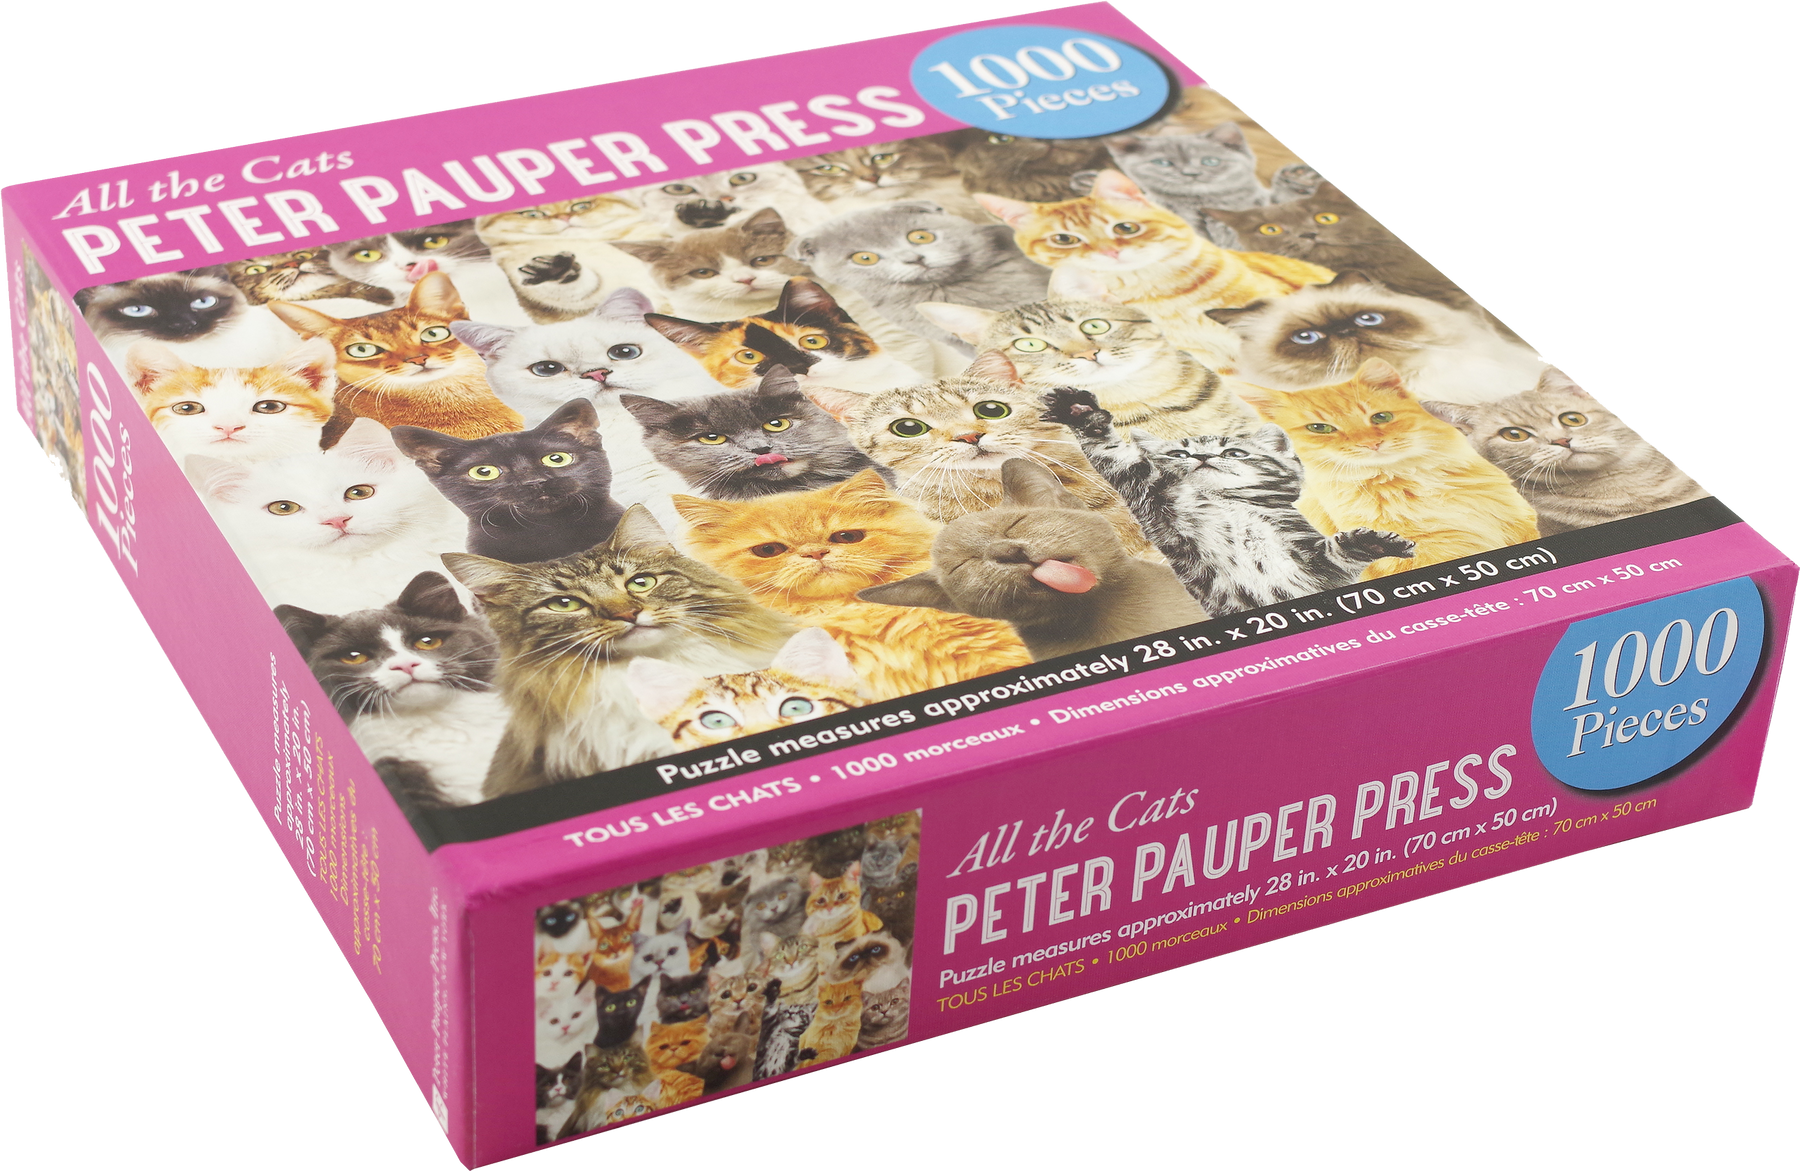 Cats Journal – Peter Pauper Press